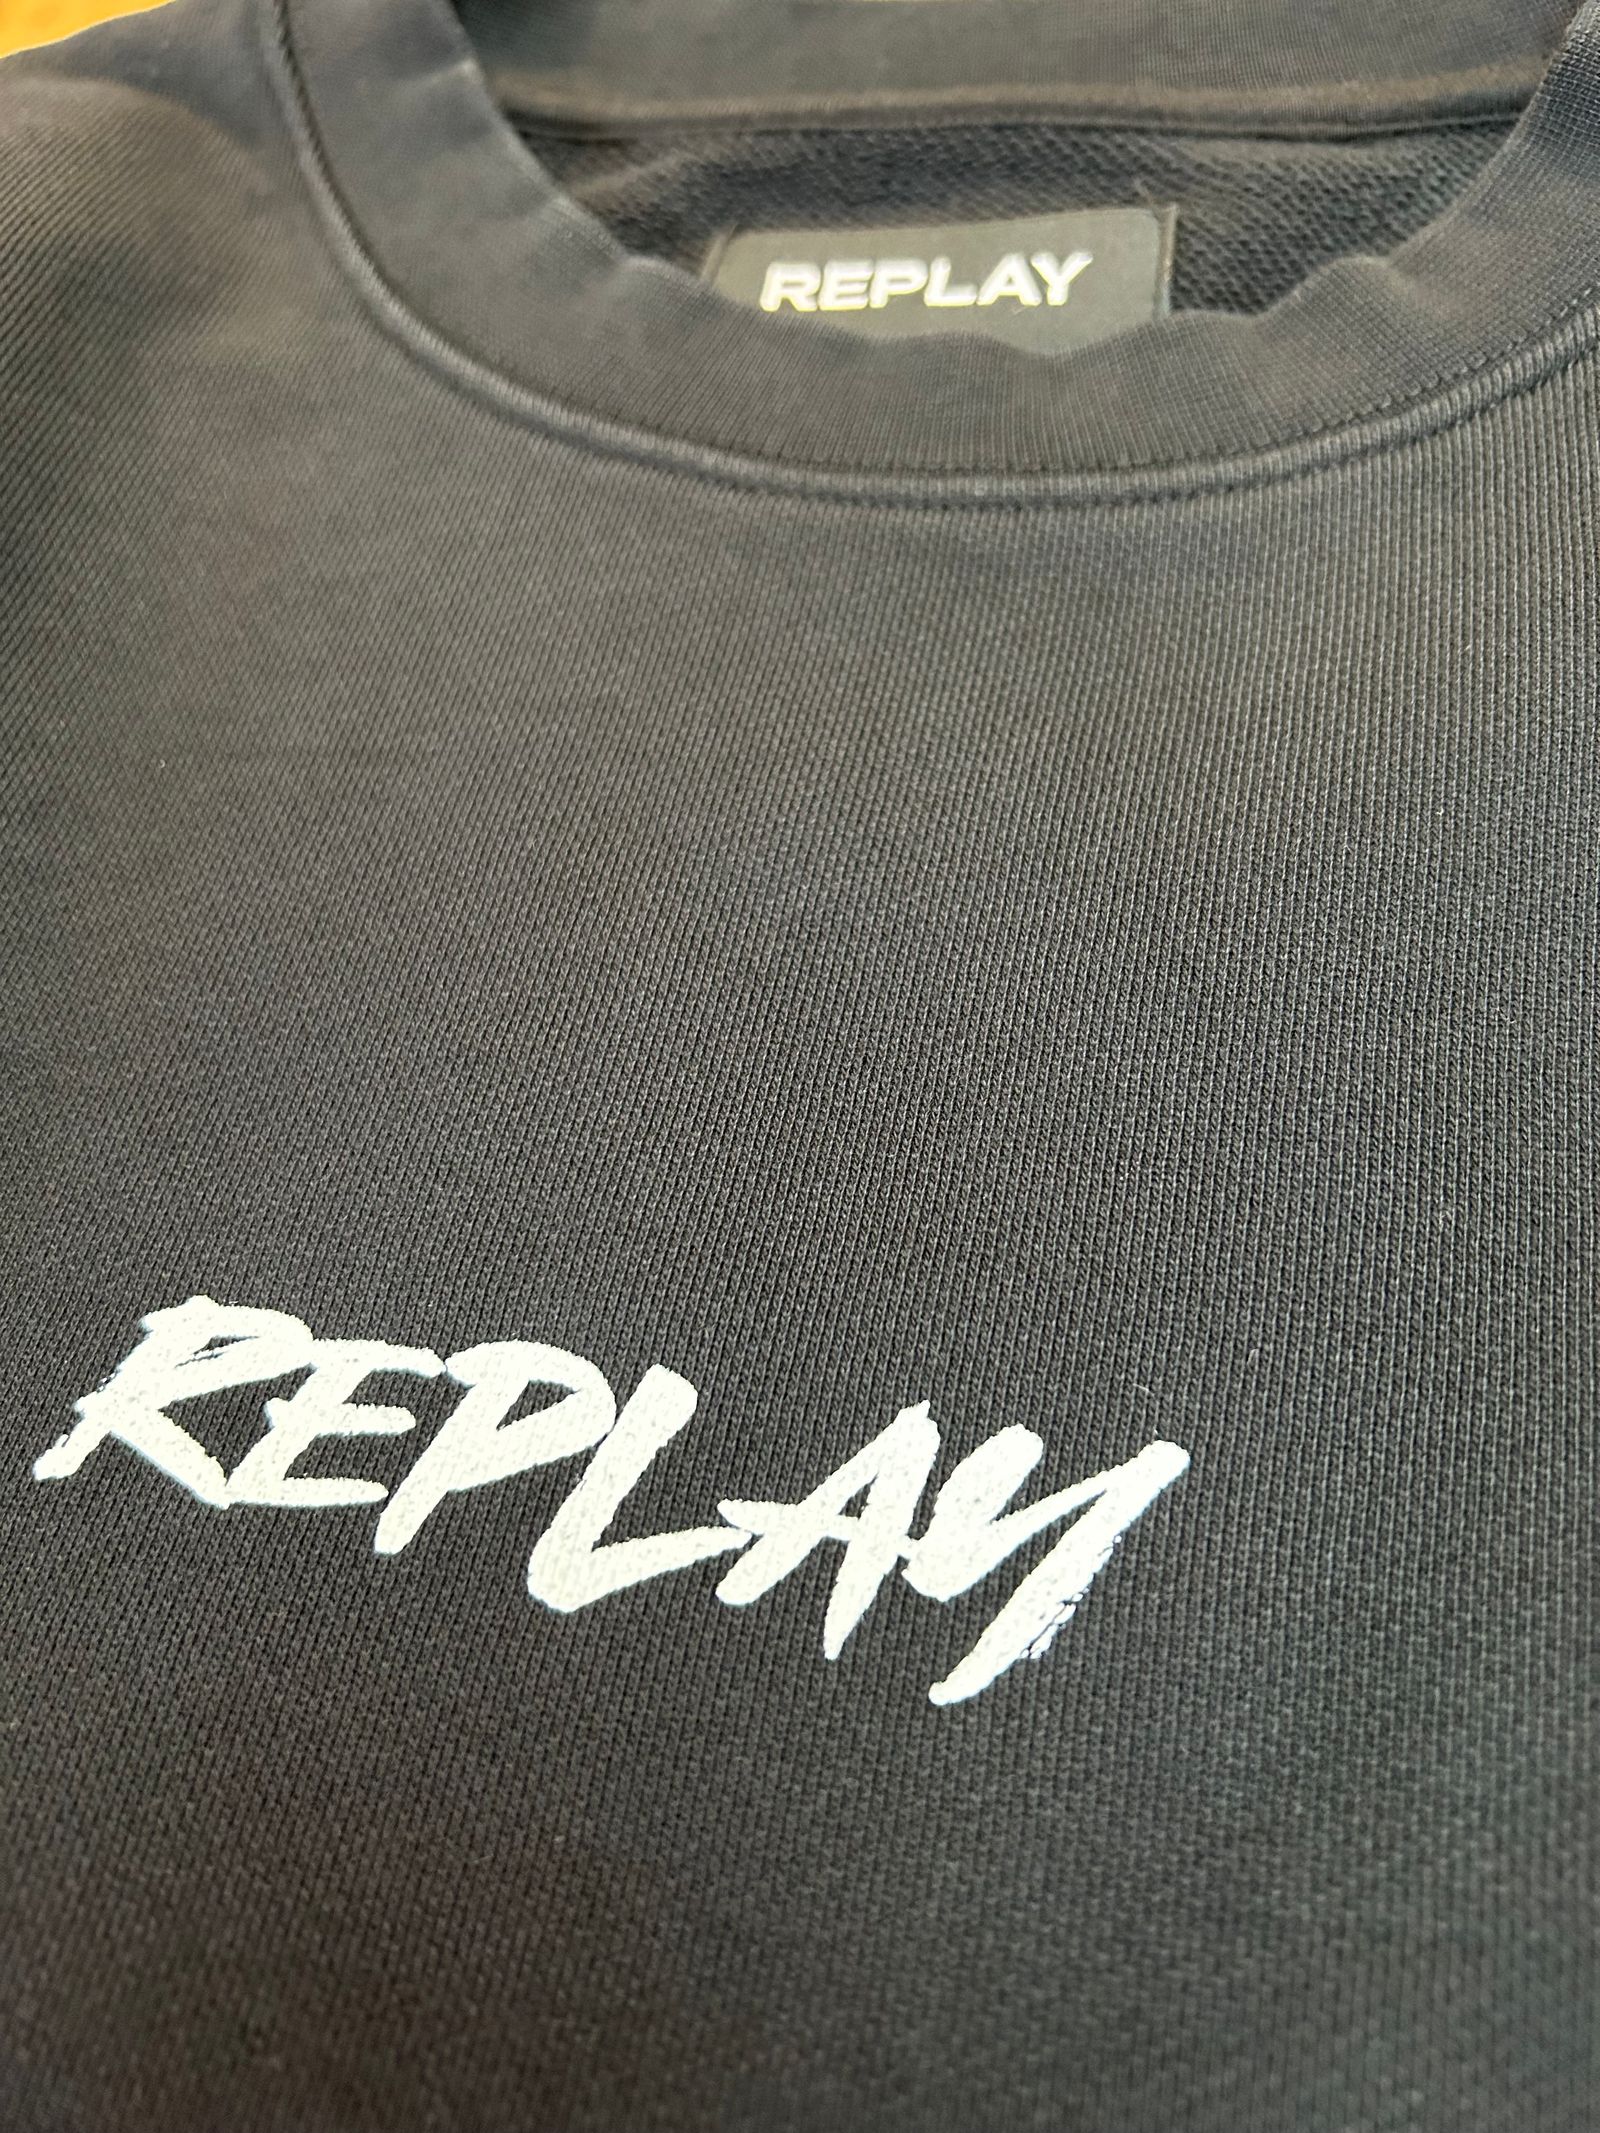 REPLAY - リラックスフィットクルーネックスウェットシャツ / ブラック